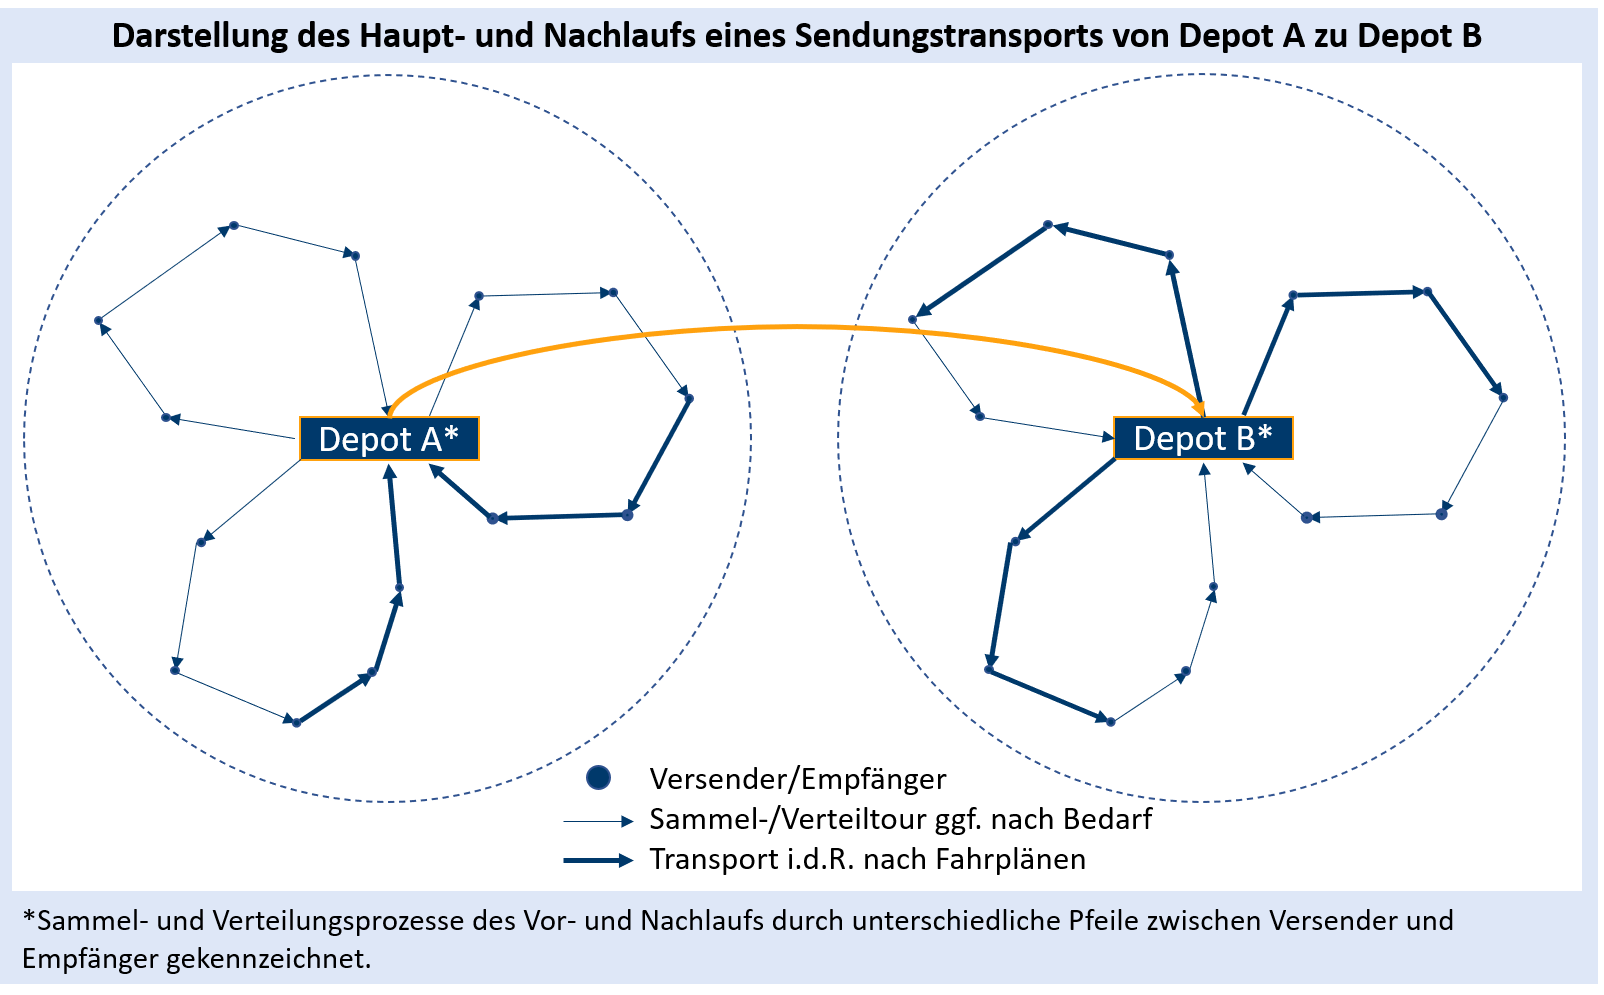 KEP_Haupt-und Nachlauf_290020.png